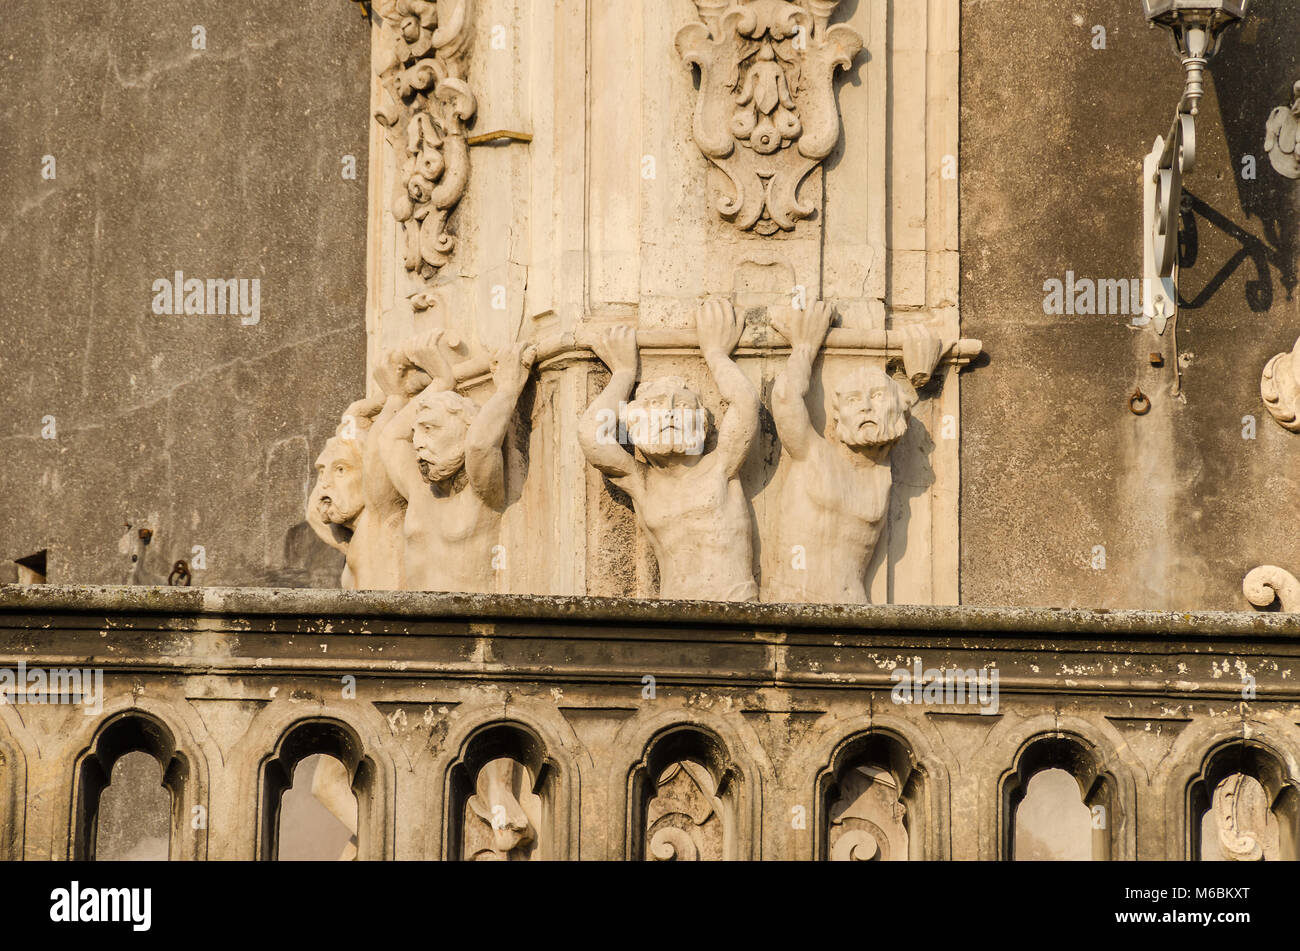 Catania, Italien - 7 November 2015: Ein Teil der Fassade des Palazzo Biscari, ein eigenes Barockschloss in Catania, von Bildhauer Antonino Amato eingerichtet. Stockfoto